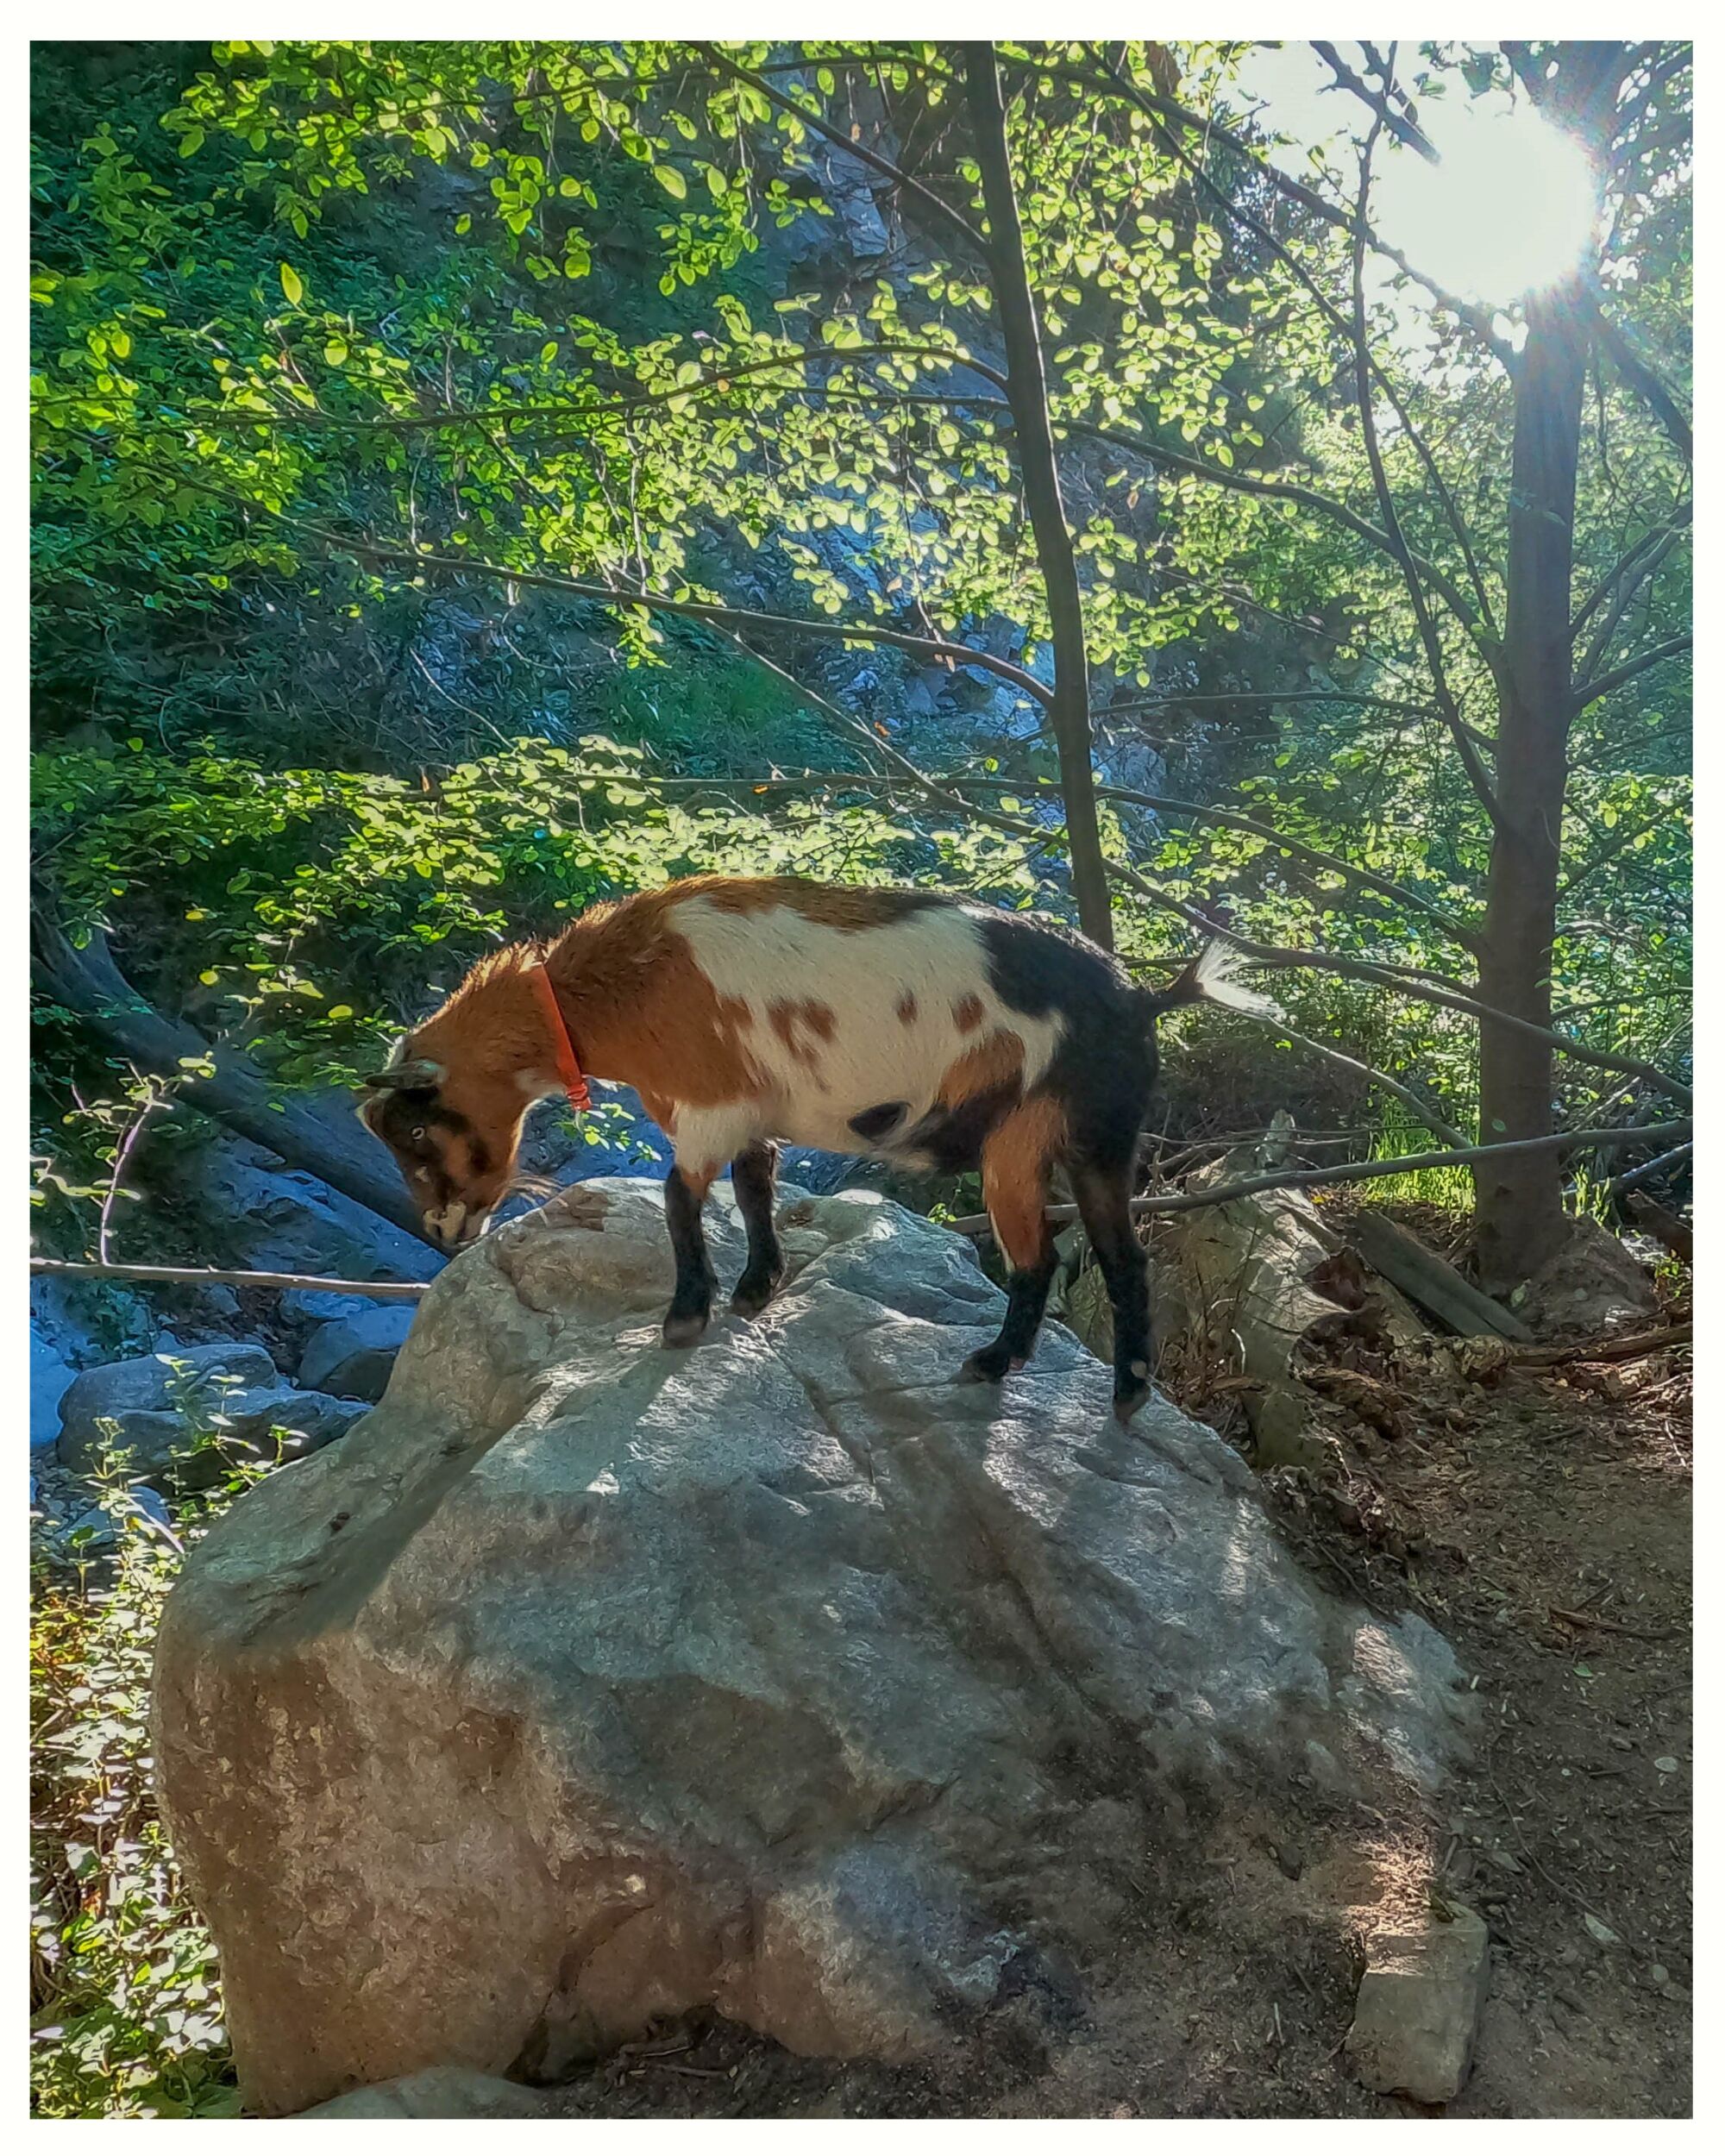 A goat on a rock 